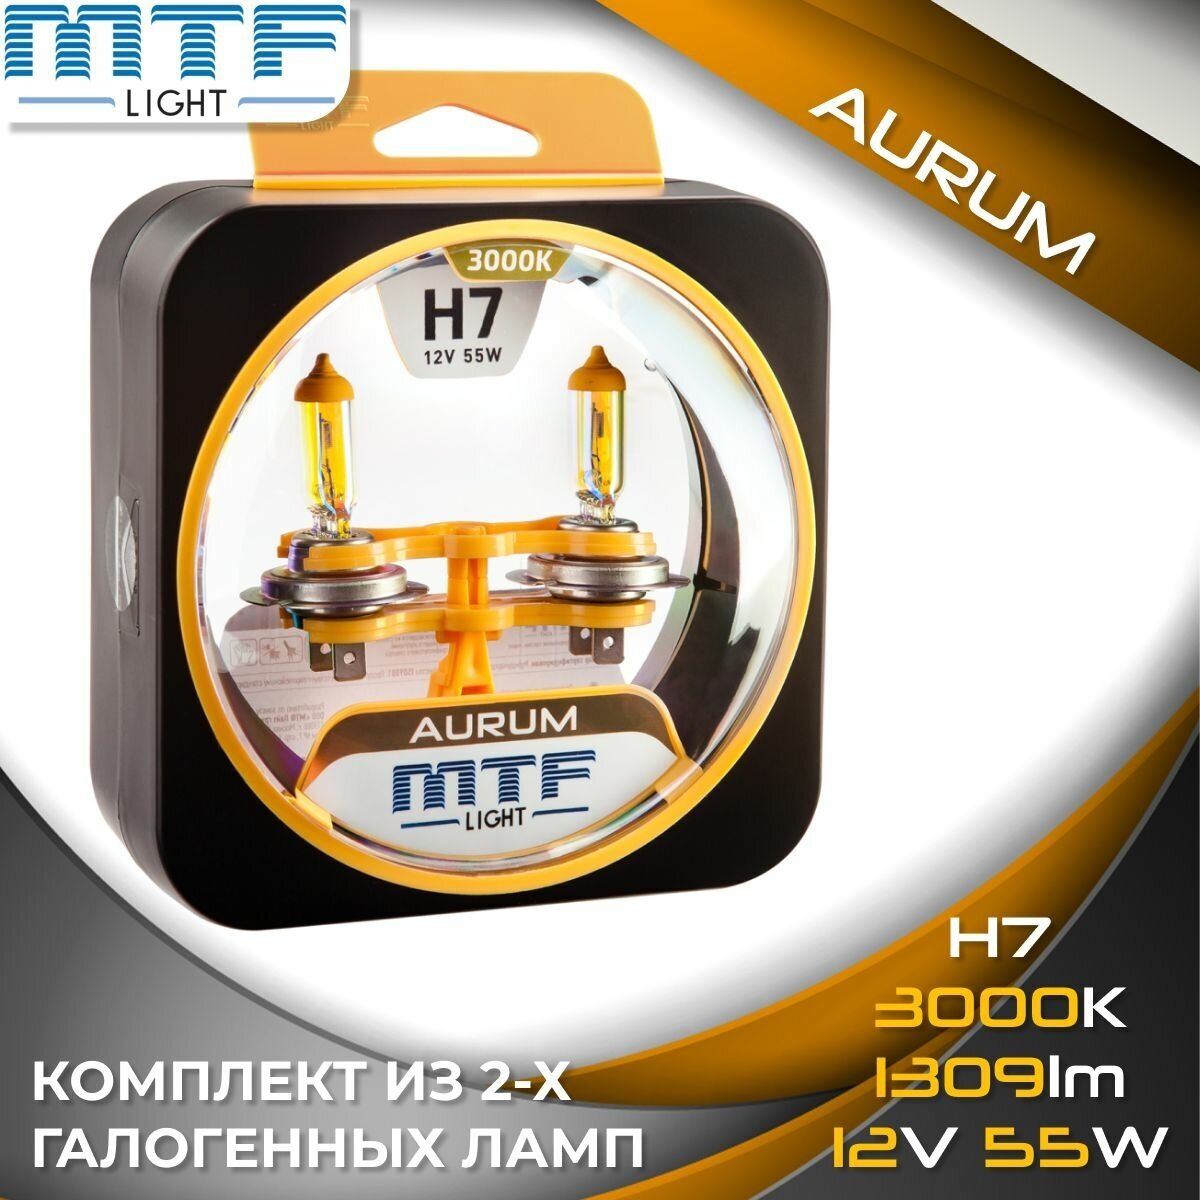 Галогенные автолампы MTF Light серия AURUM H7, 12V, 55W (комплект 2 шт.)